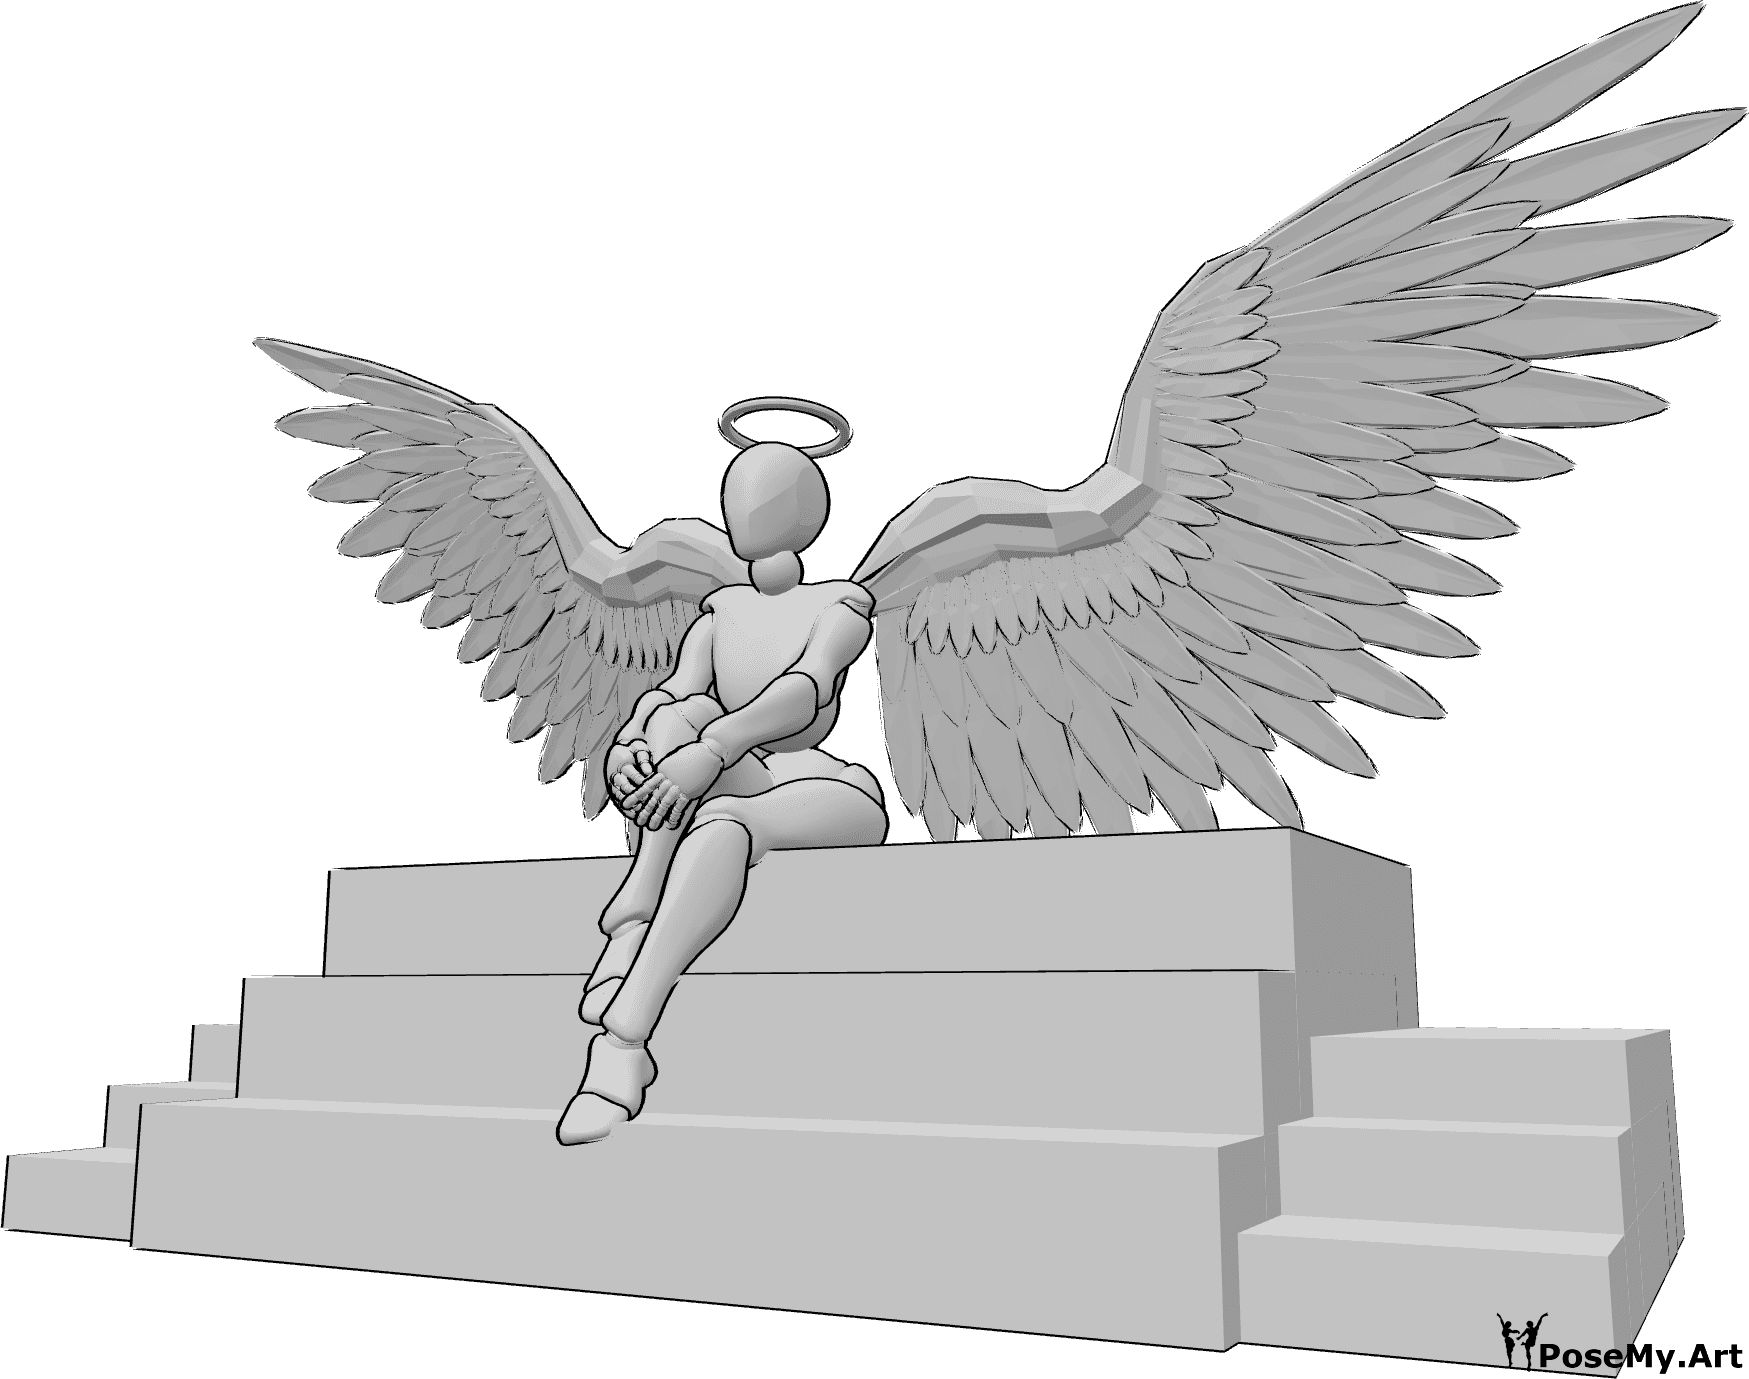 Posen-Referenz- Weiblicher Engel in sitzender Pose - Weiblicher Engel sitzt auf der Treppe, hält ihr Knie und schaut nach vorne